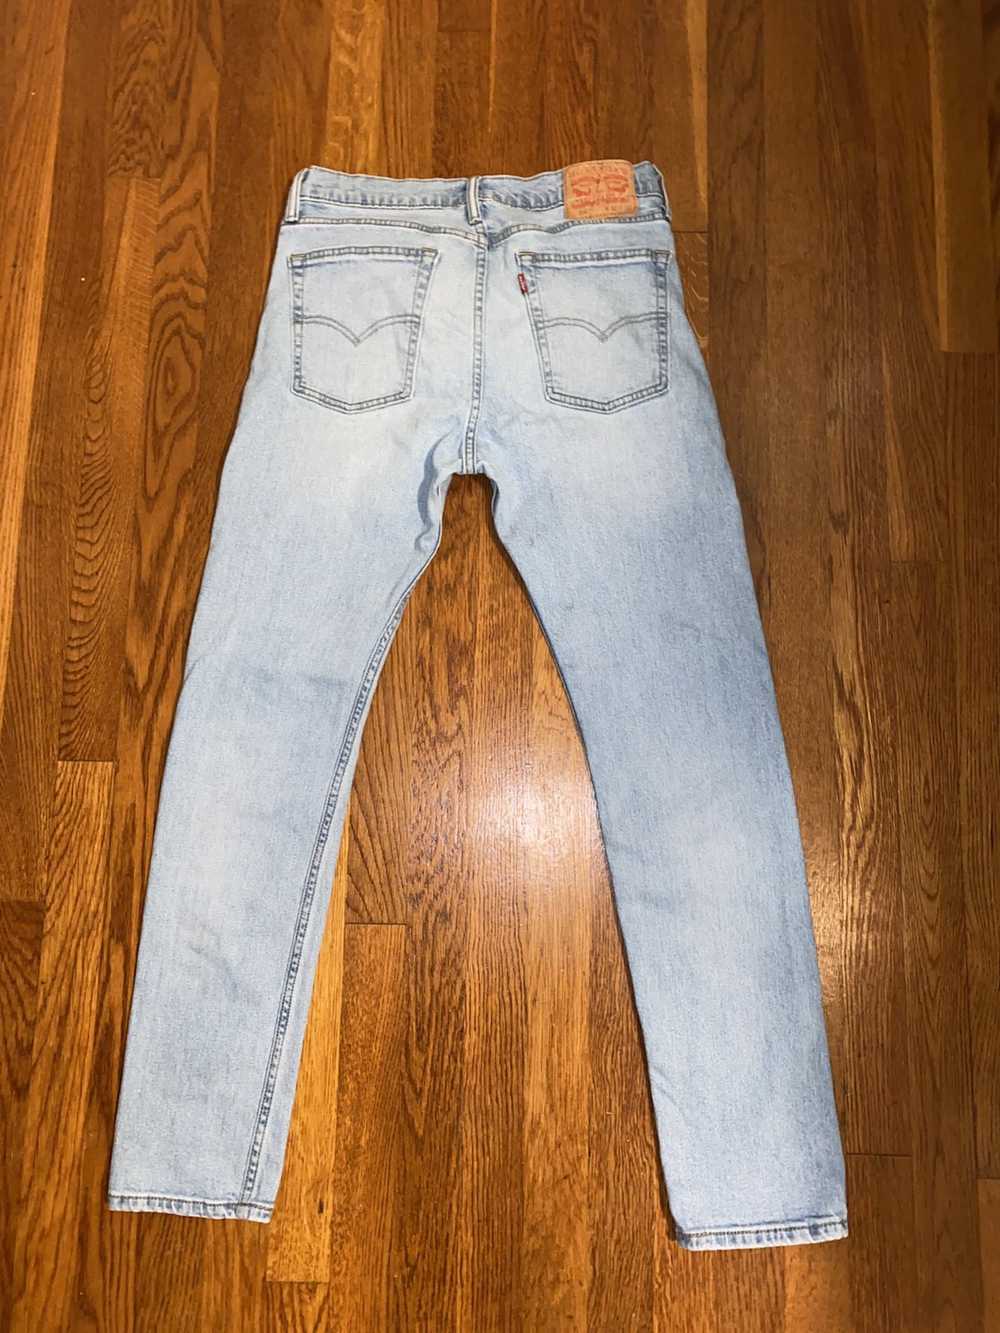 Levi's Levi’s Slim Fit Jeans - image 2